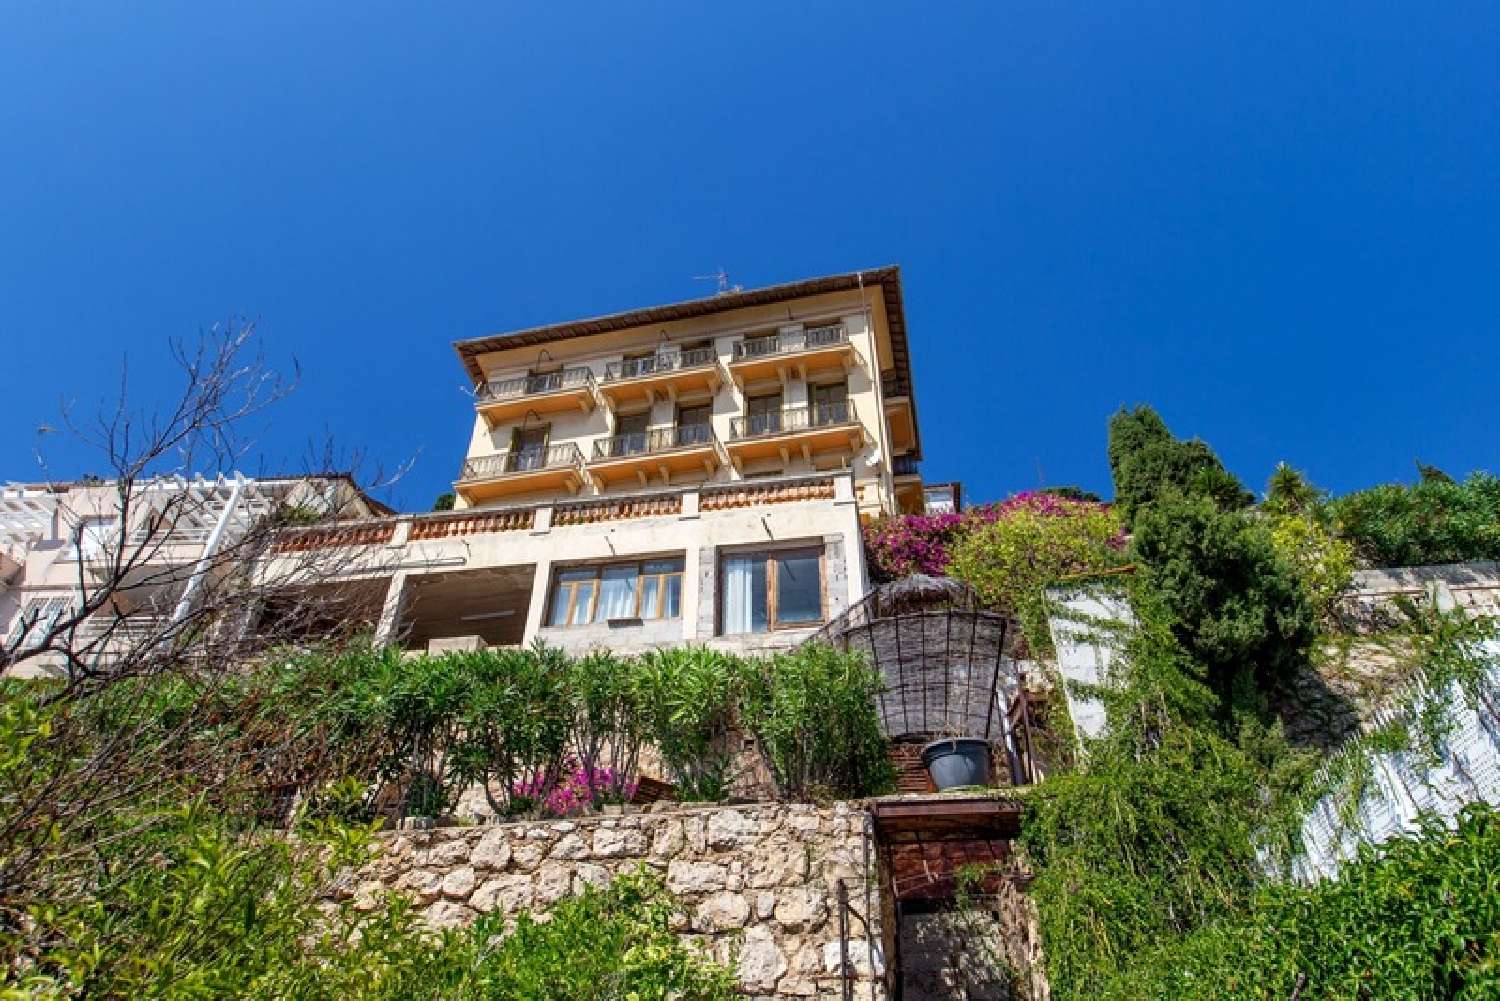  à vendre maison Roquebrune-Cap-Martin Alpes-Maritimes 4